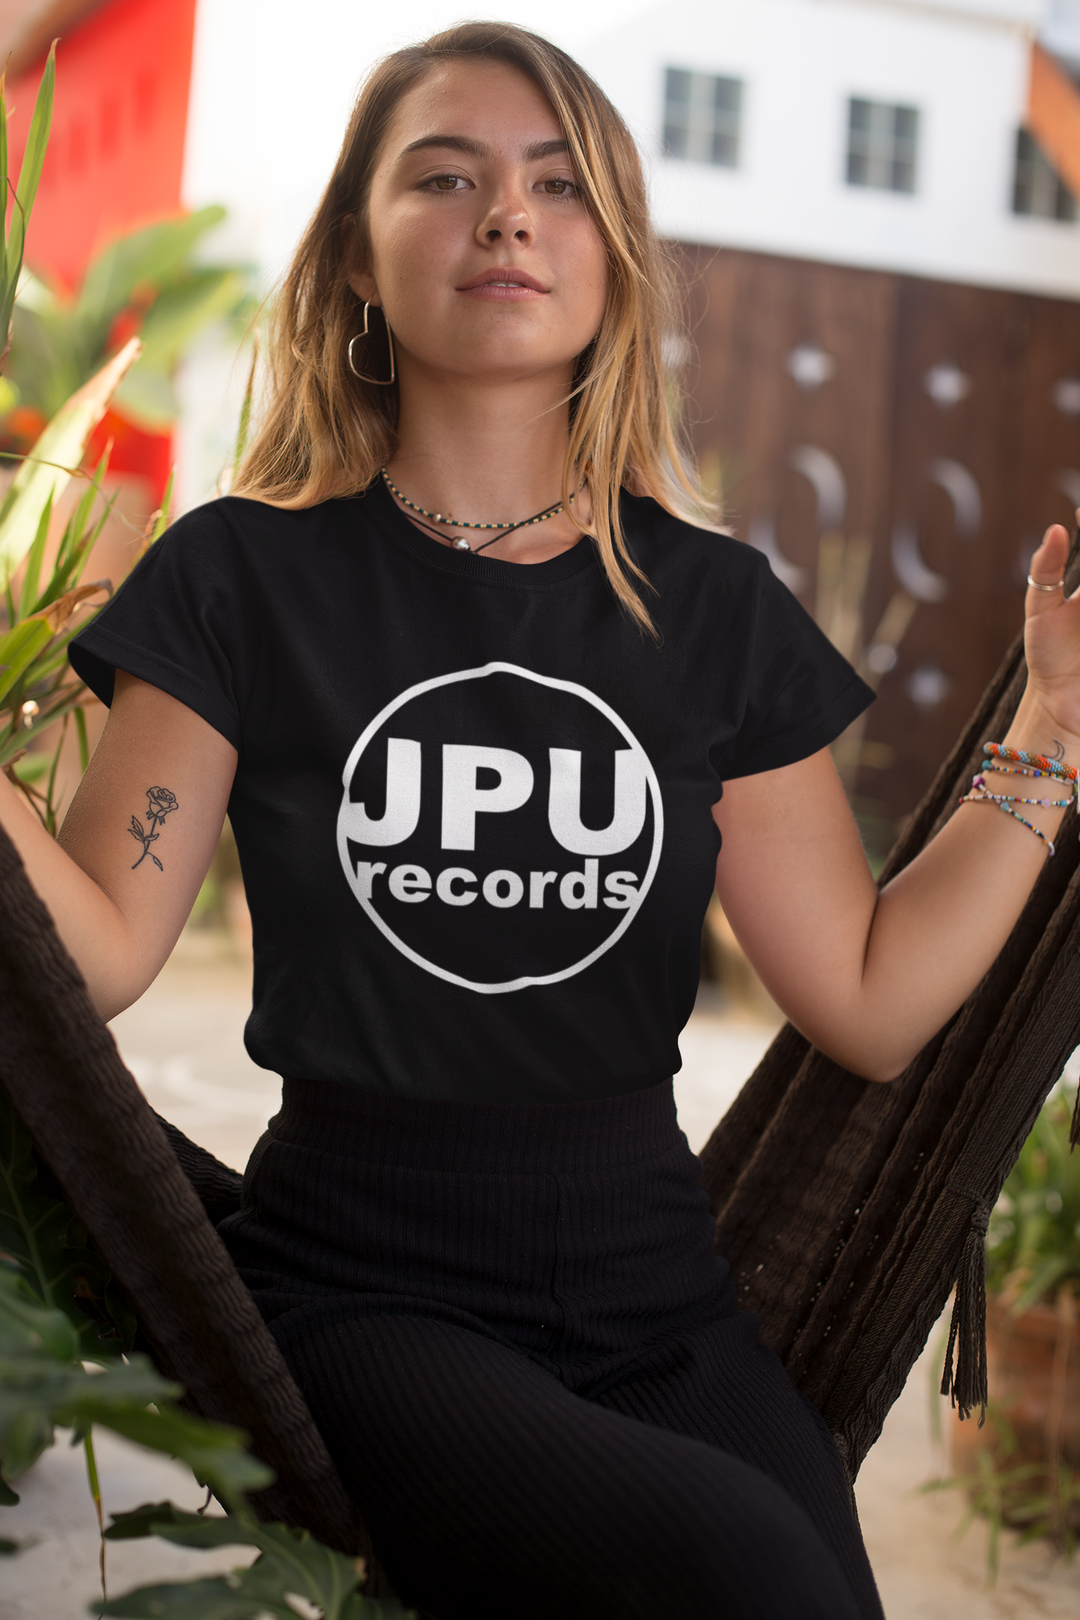 JPU Records Merch: Tshirt